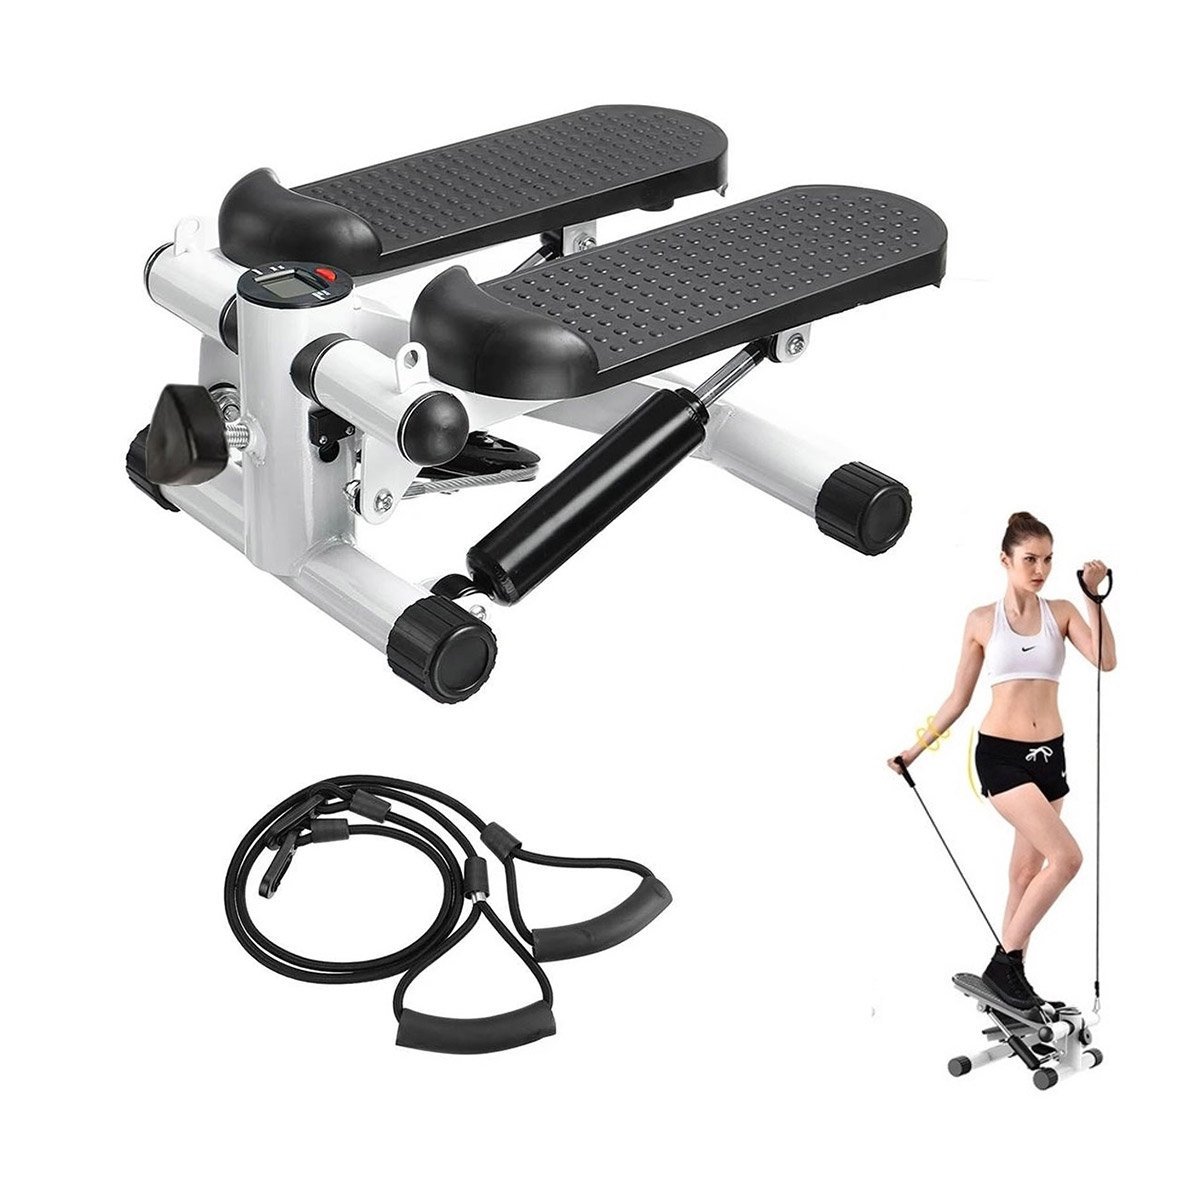 Mini Stepper Simulador Caminhada Fisioterapia Exercicio Perna Braço Gluteos Academia Musculaçao Toni - 1